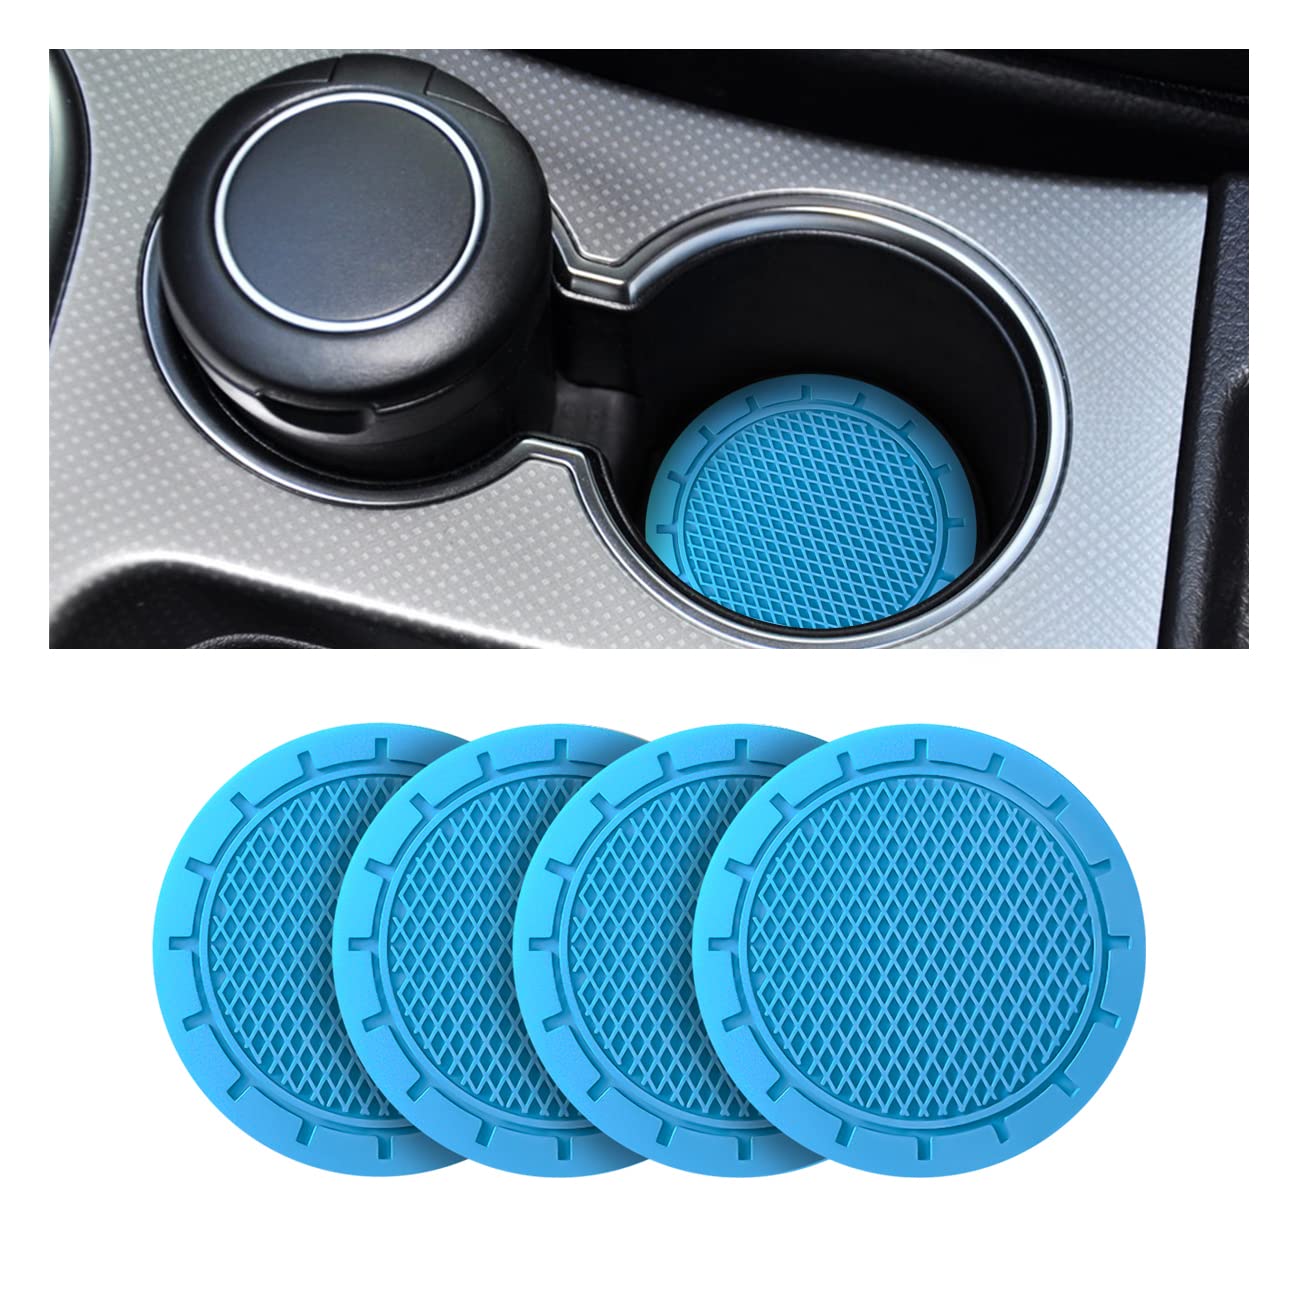 CGEAMDY Untersetzer für Becherhalter Auto, Universeller Untersetzer aus Silikon für das Auto, Anti-Rutsch Und Haltbar, 7cm Durchmesser, Autozubehör Innenbereich (Blau) von CGEAMDY